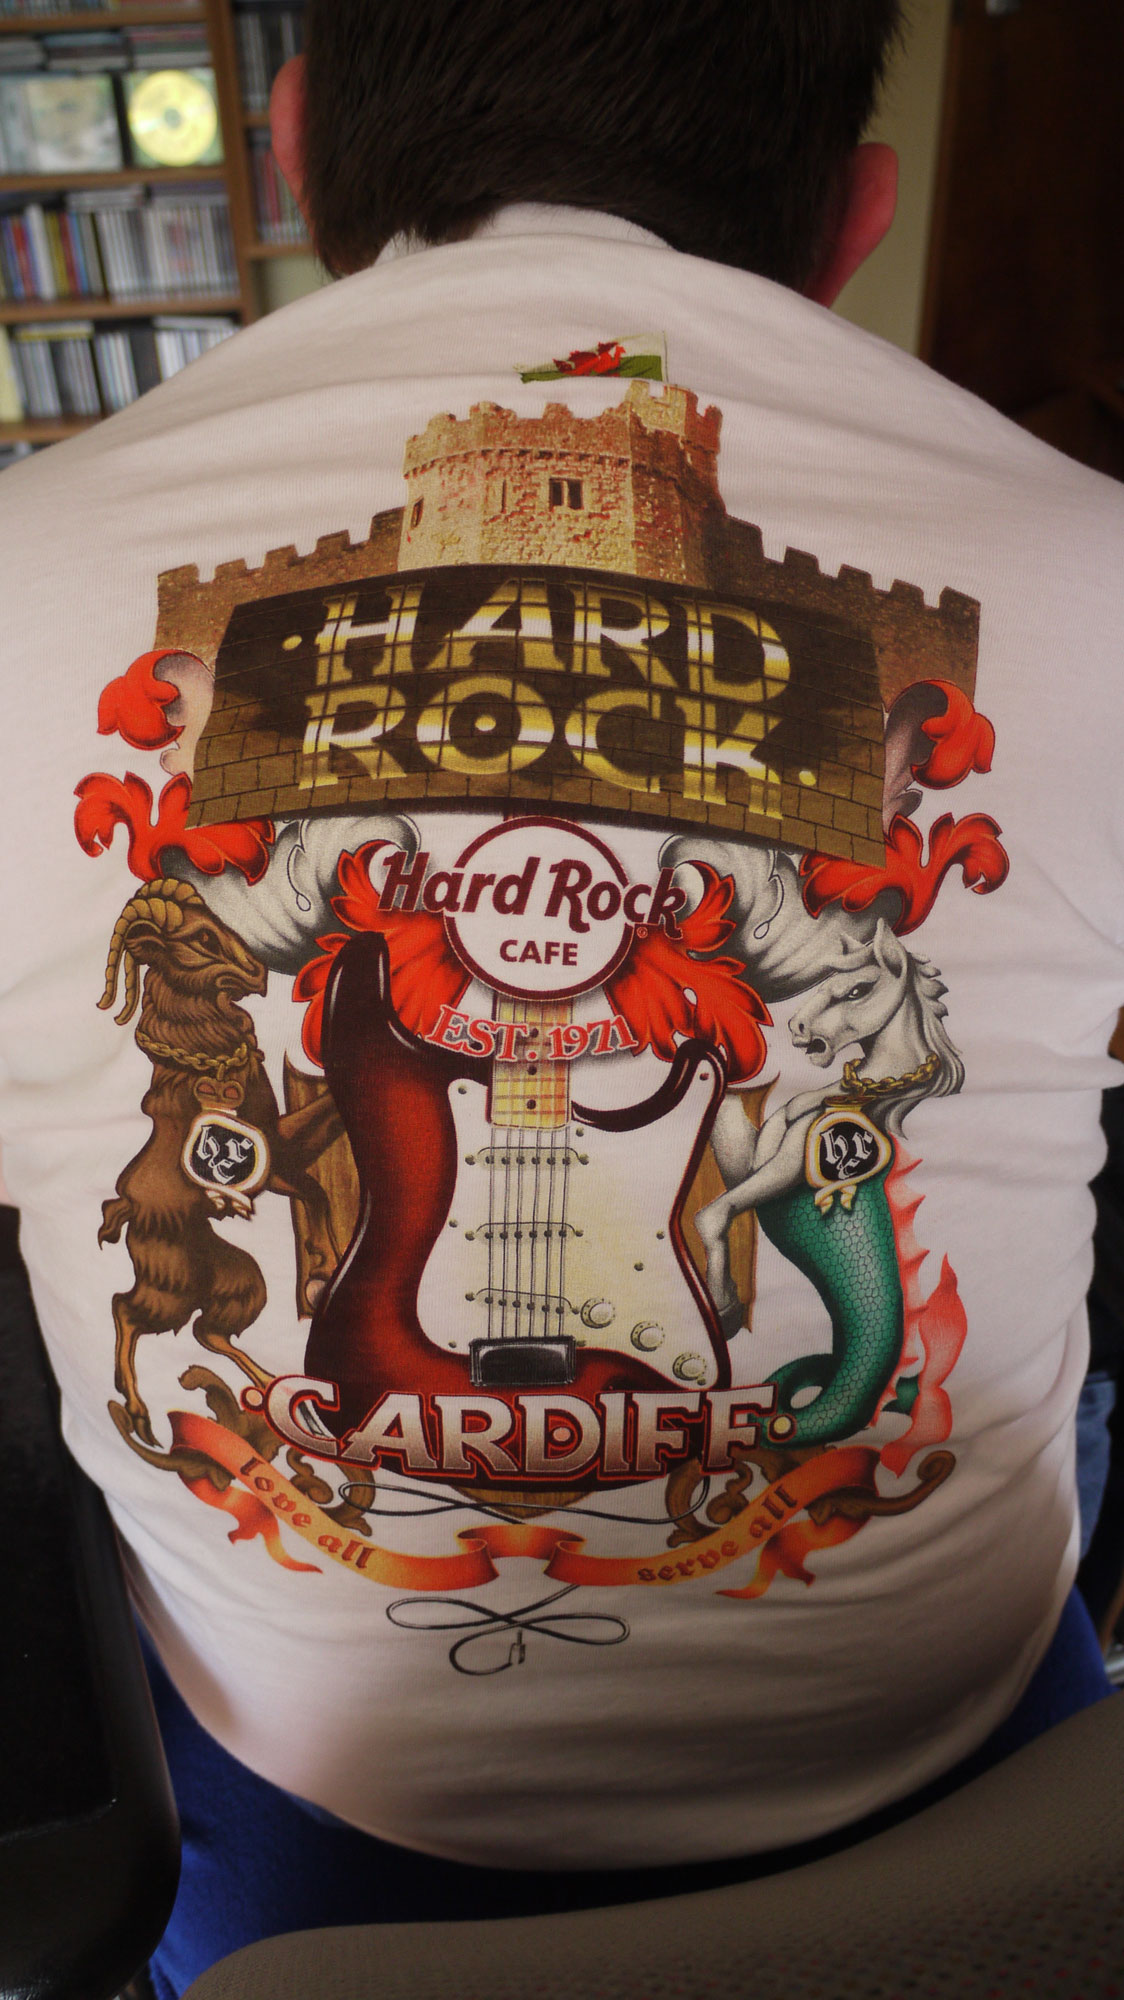 Hard Rock Cafe, Cardiff. T-Shirt back